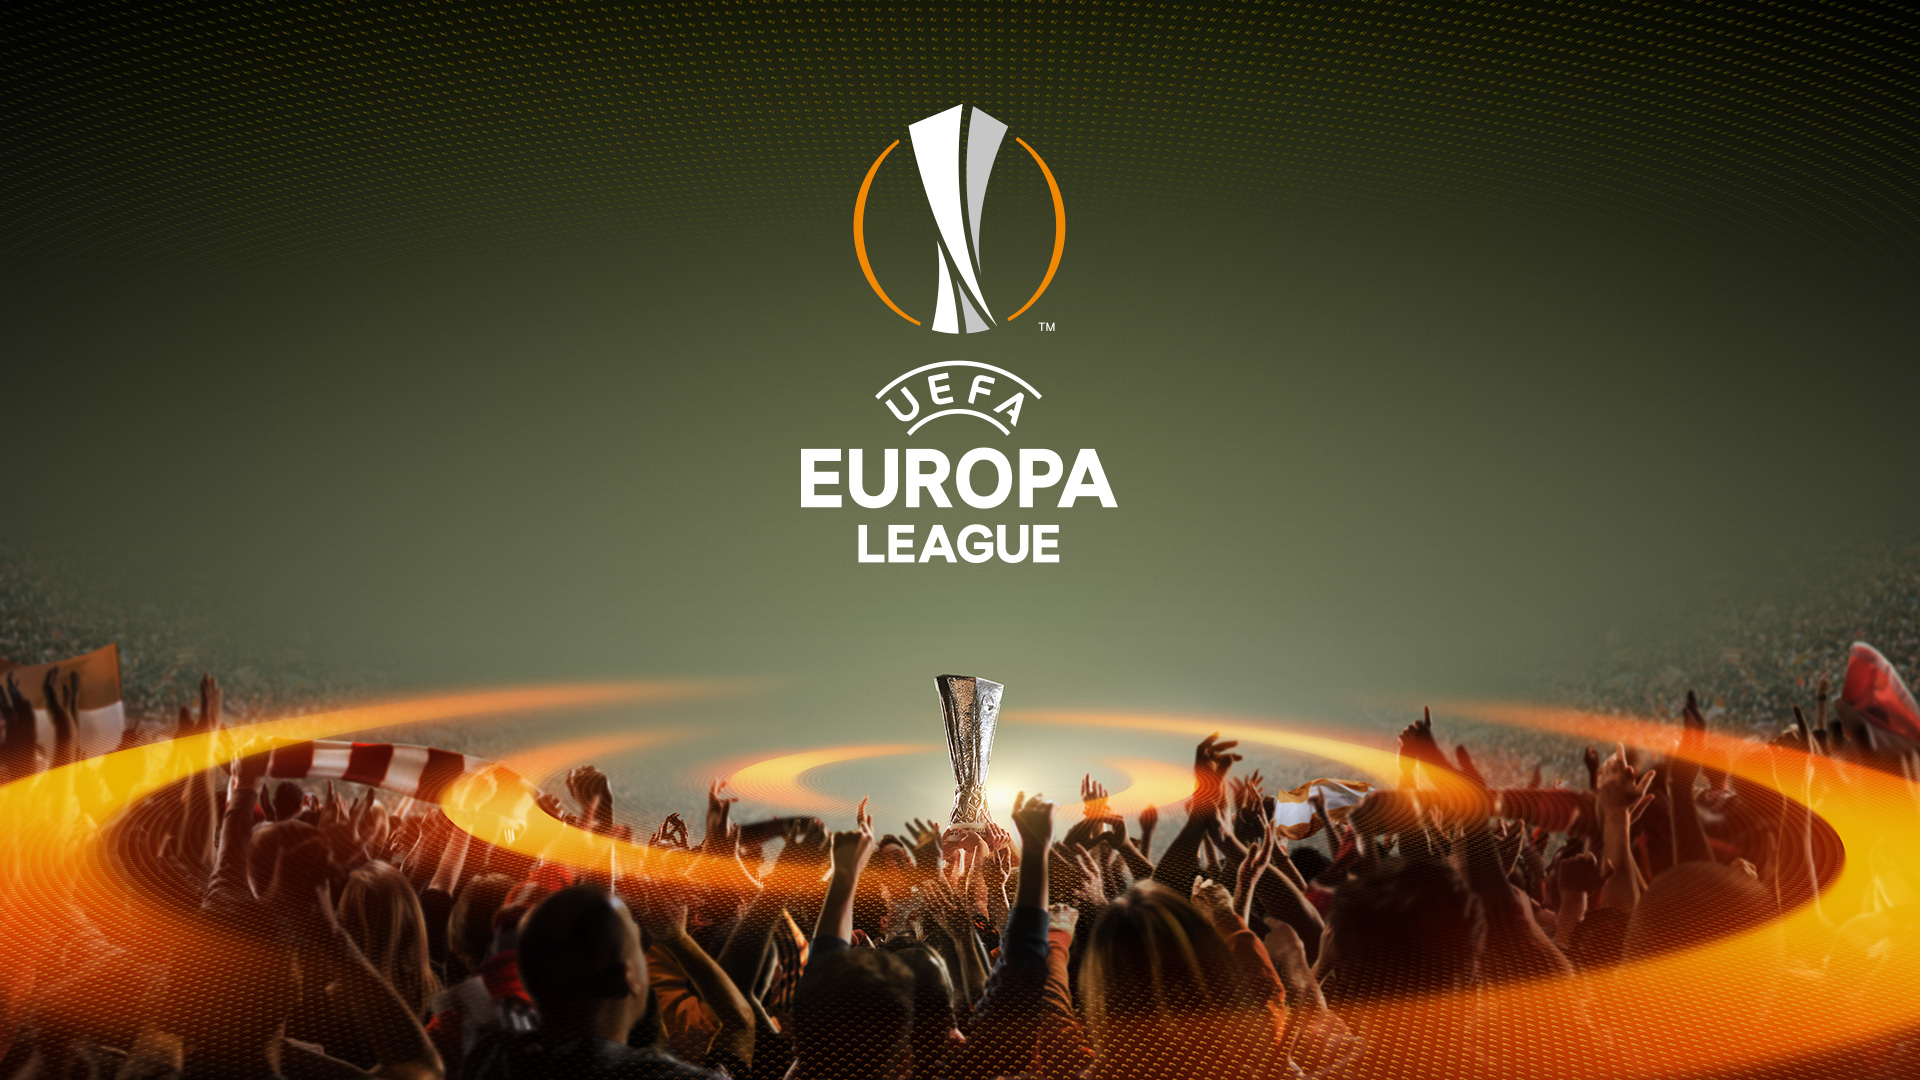 Уефа 2. Лига Европы УЕФА фон. Лига Европы УЕФА 256x256. UEFA Europa League логотип. Герб Лиги Европы.